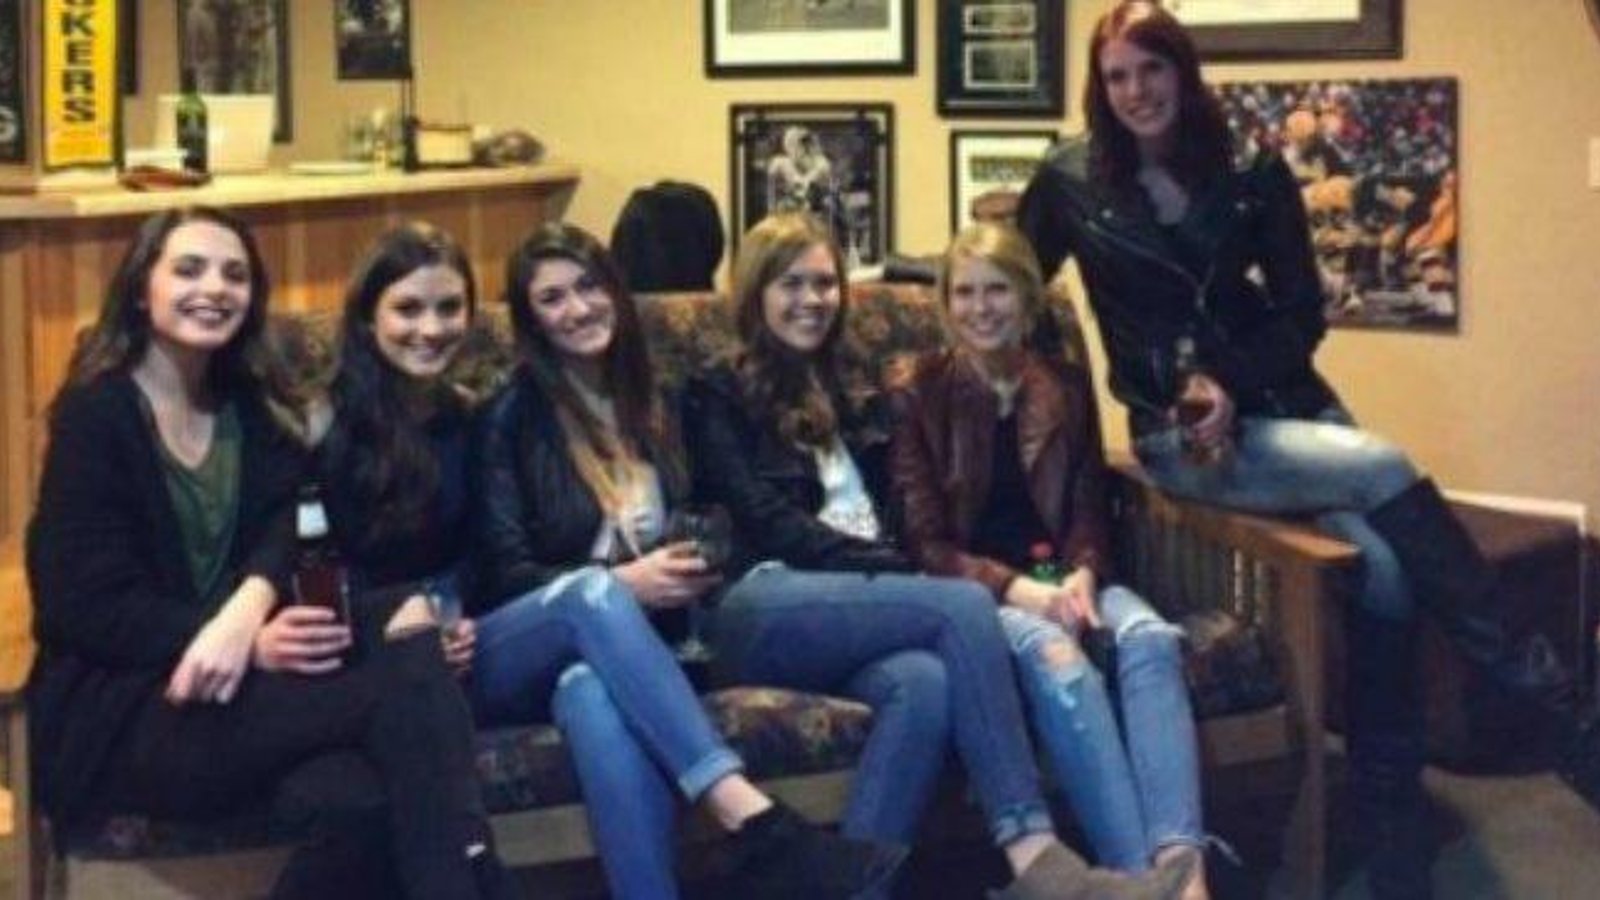 Arrivez-vous à trouver les jambes de toutes les filles sur cette photo?